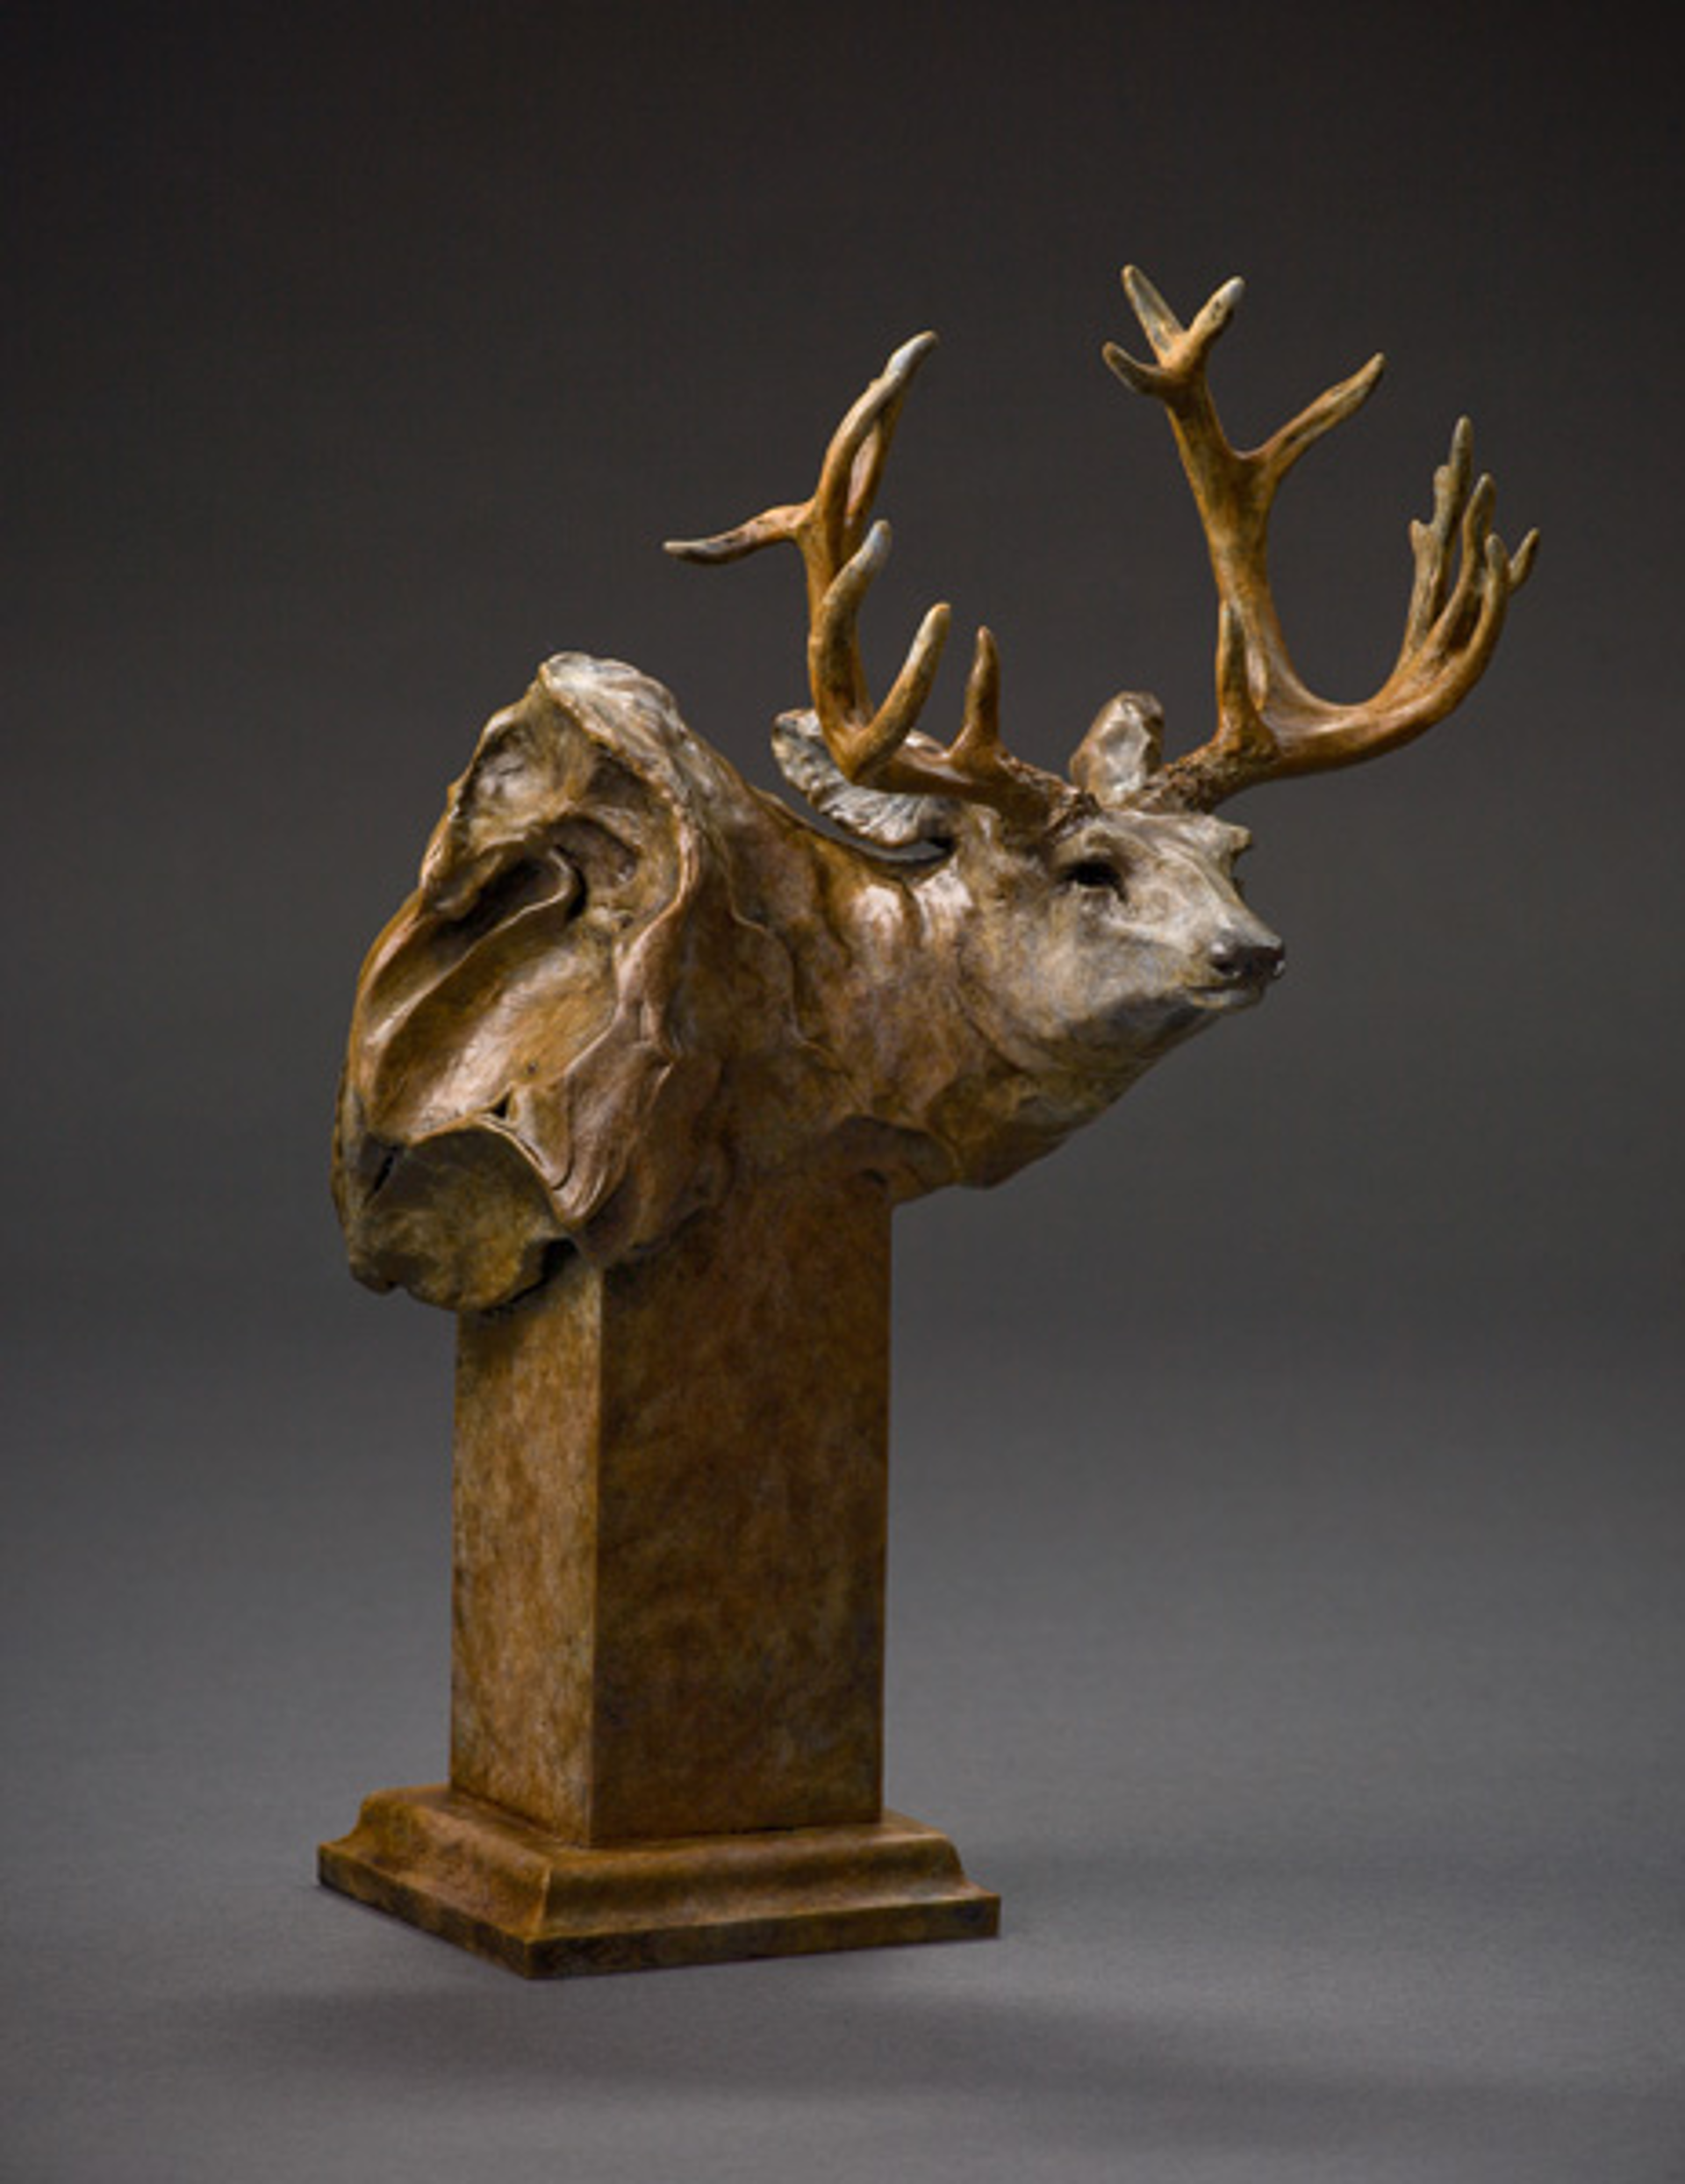 Mule Deer Study #7/35 by Sherry Salari Sander